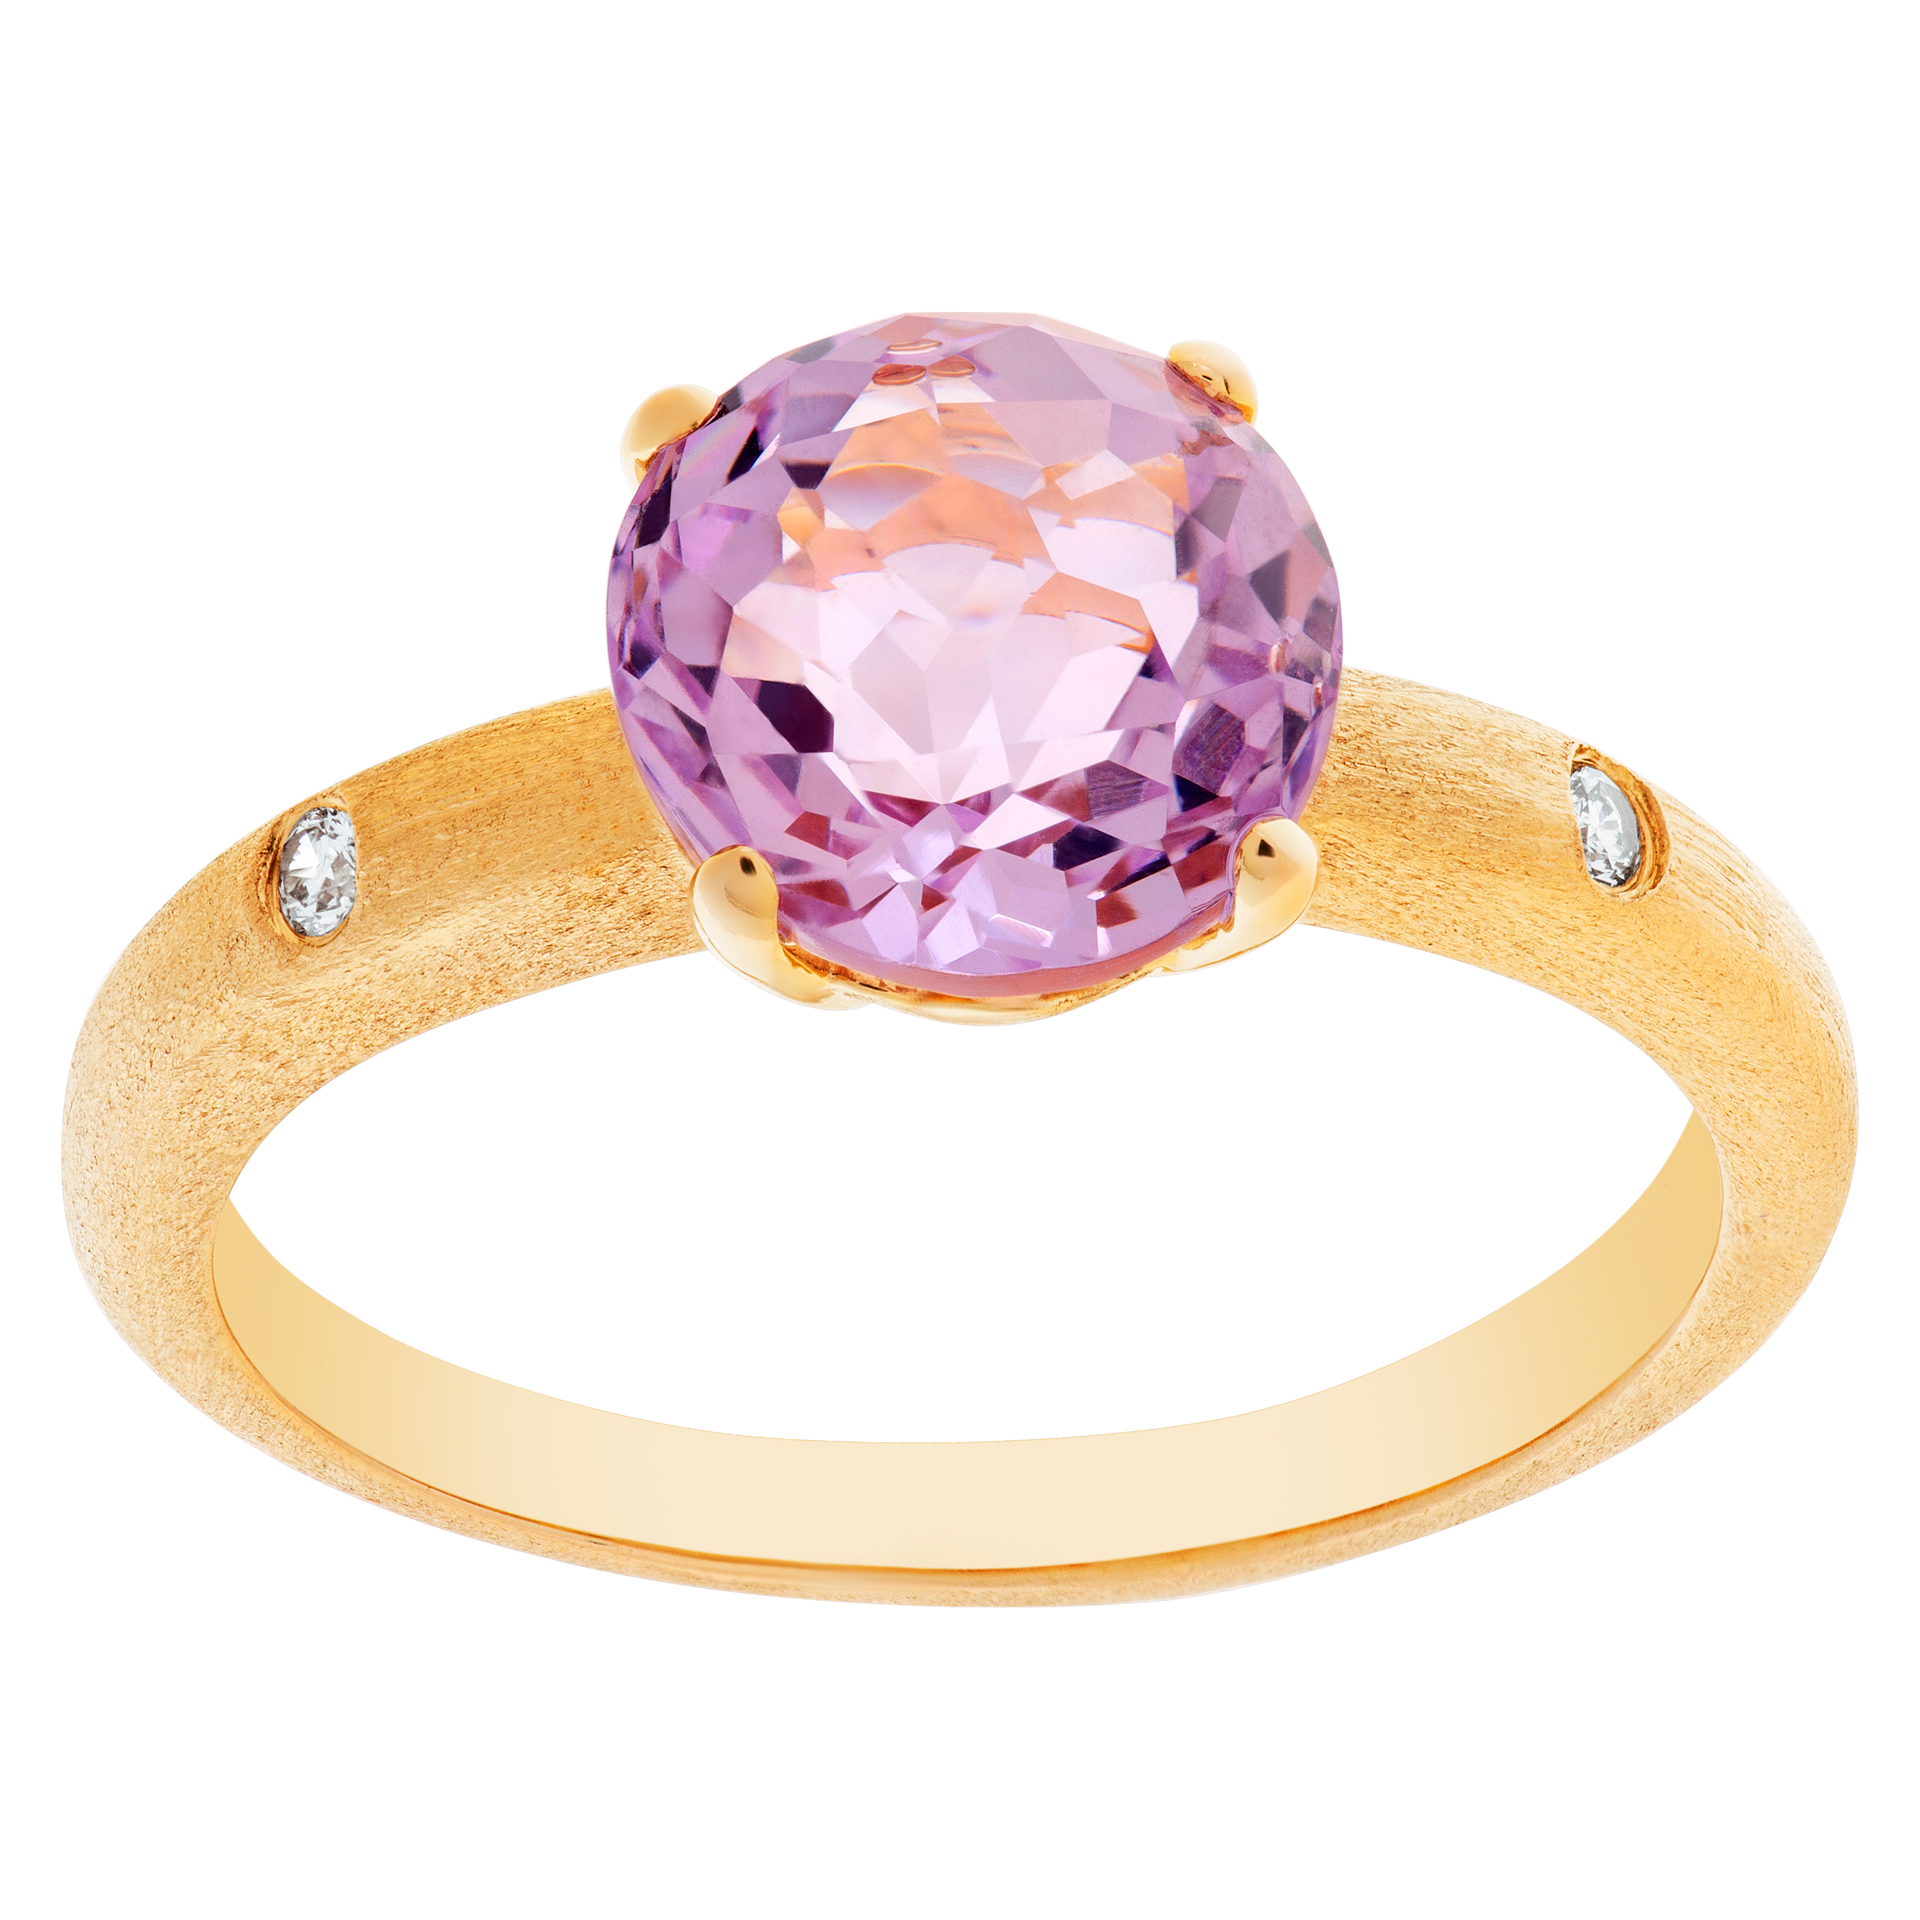 Pink tourmaline & diamond ring set in brushed finish 18k rose gold. Pimk tourmaline approx.1.50 carat image 1